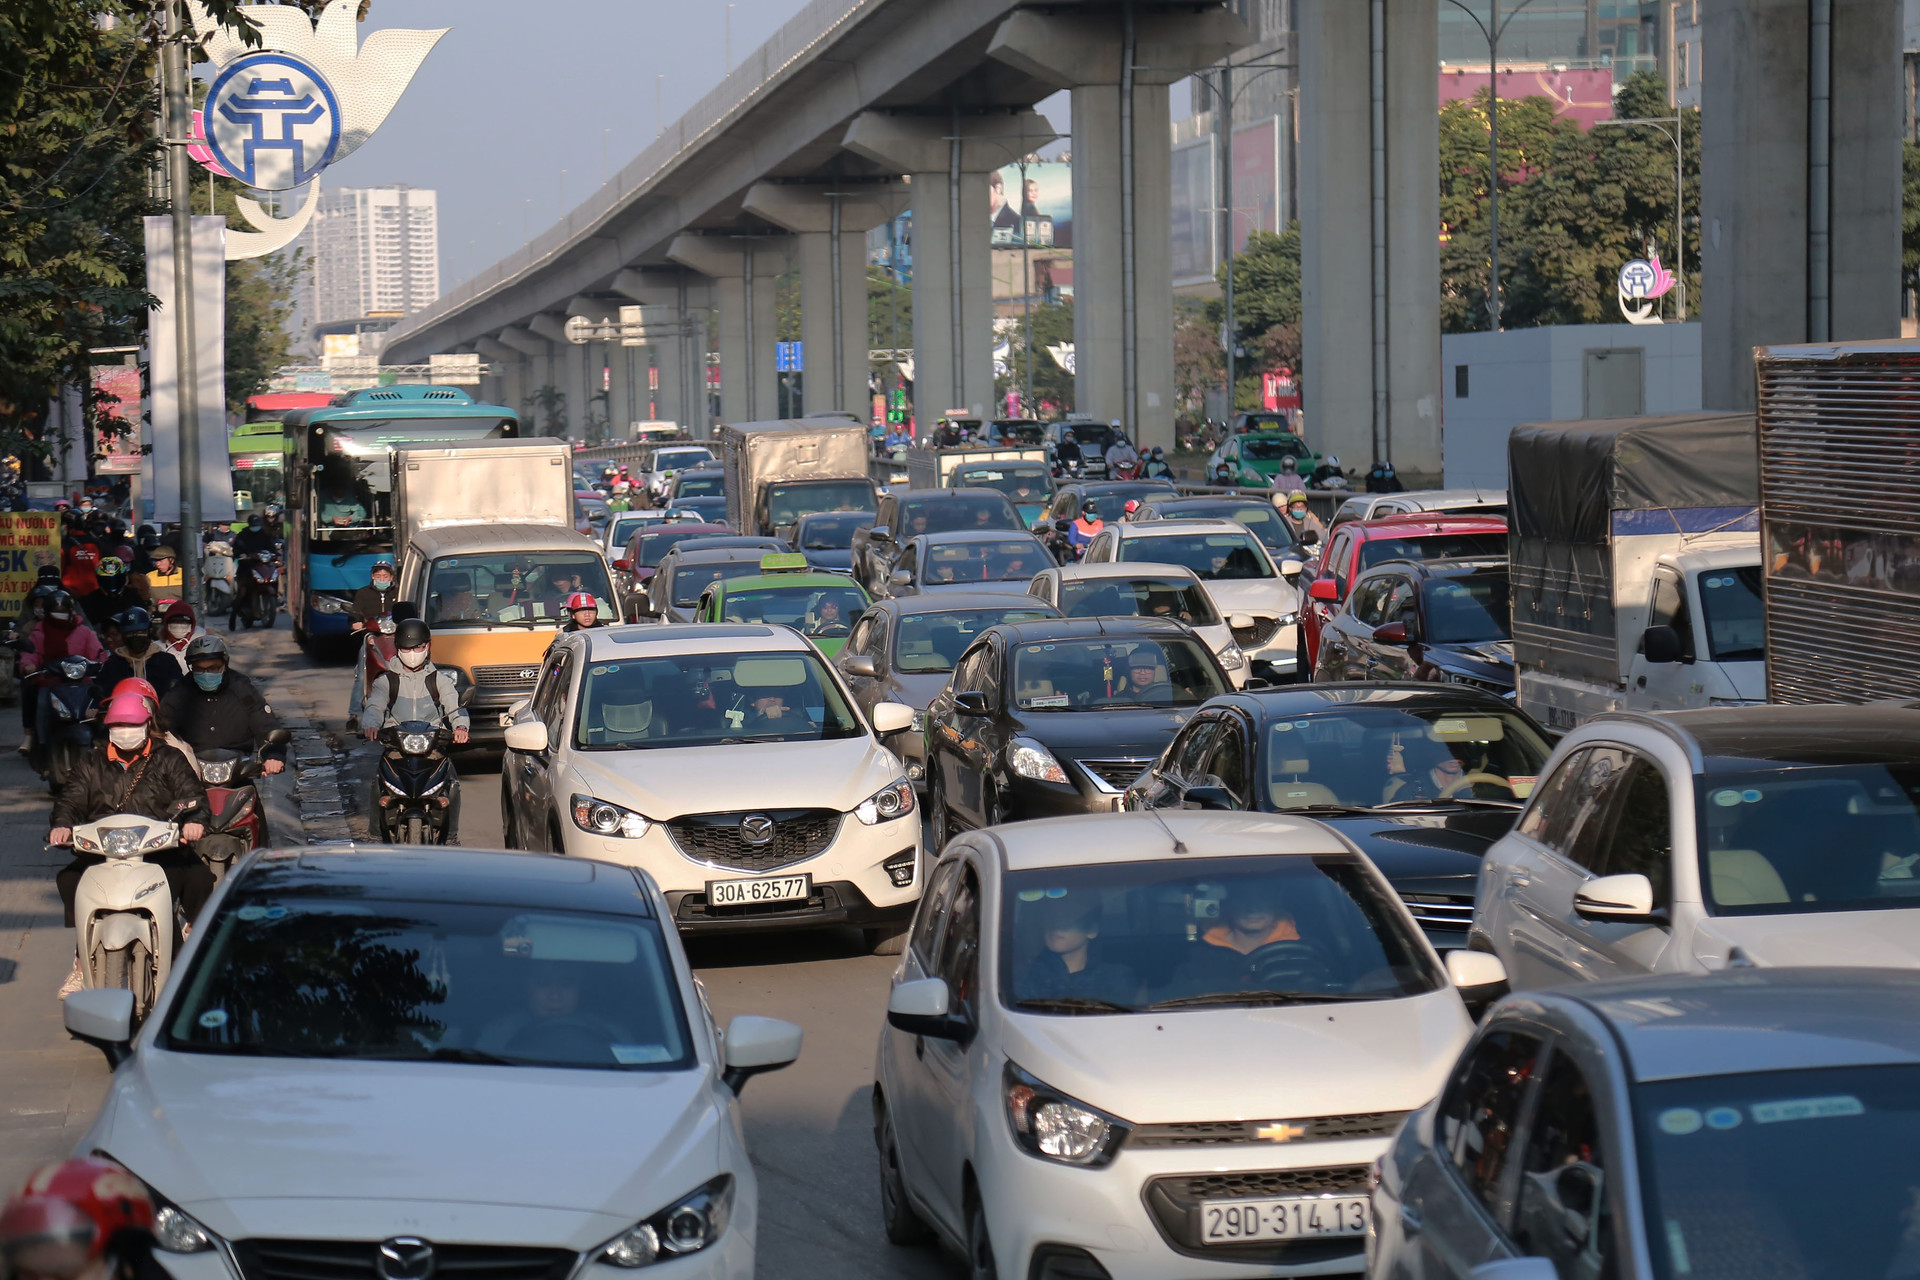 Chiều nay (31/12), nhiều người dân từ các ngả đường của Thủ đô Hà Nội đã đổ ra các bến xe để về quê nghỉ Tết Dương lịch 2021. Theo ghi nhận, cuối giờ chiều cùng ngày, nhiều tuyến đường của Hà Nội đã rơi vào tình trạng ùn tắc kéo dài, dòng phương tiện phải 